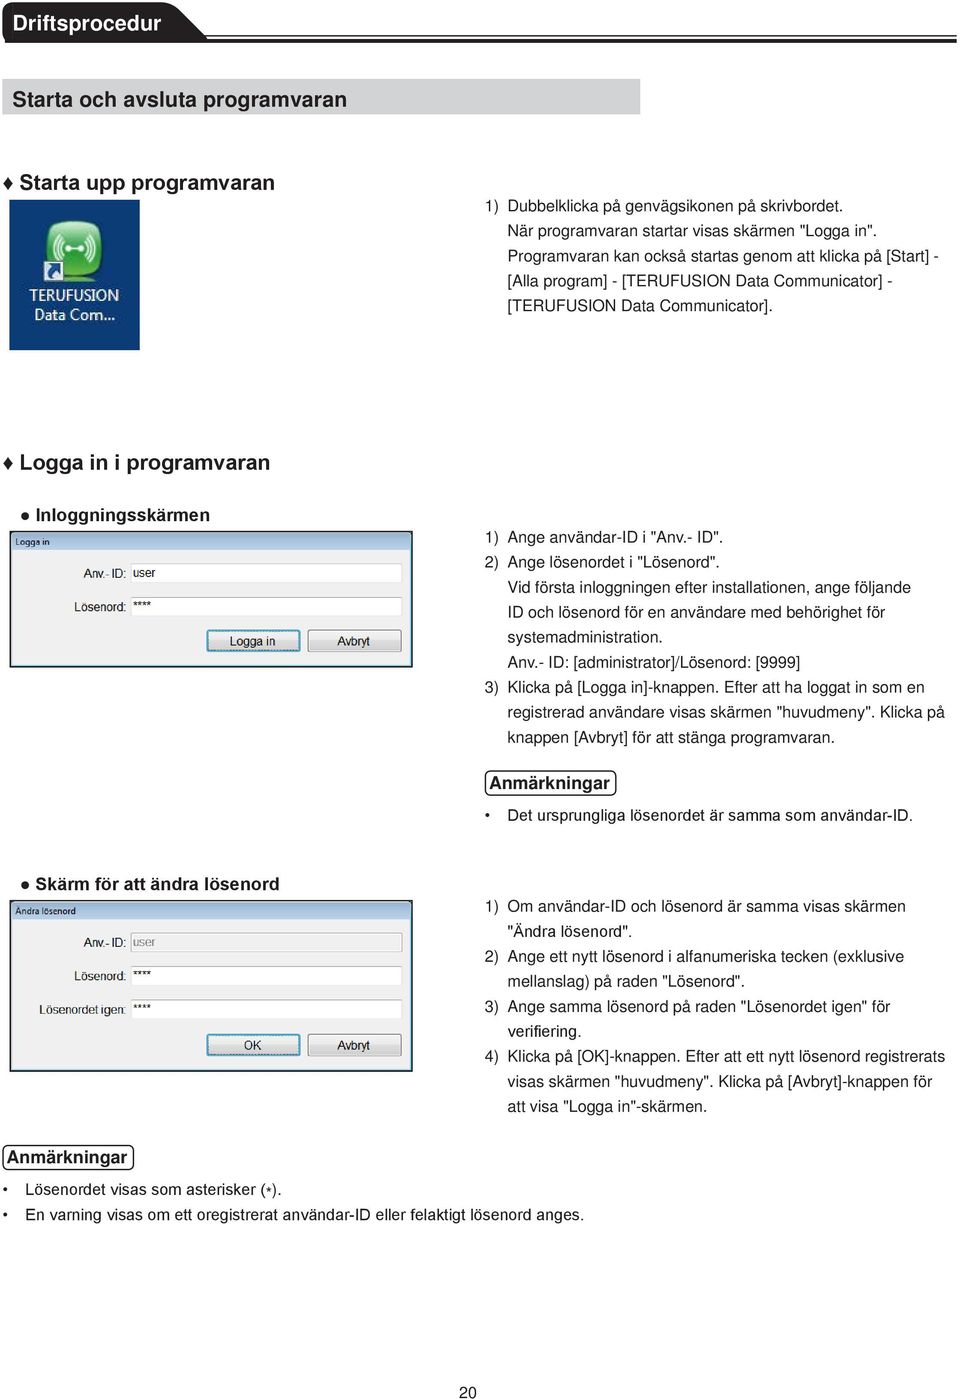 Logga in i programvaran Inloggningsskärmen 1) Ange användar-id i "Anv.- ID". 2) Ange lösenordet i "Lösenord".